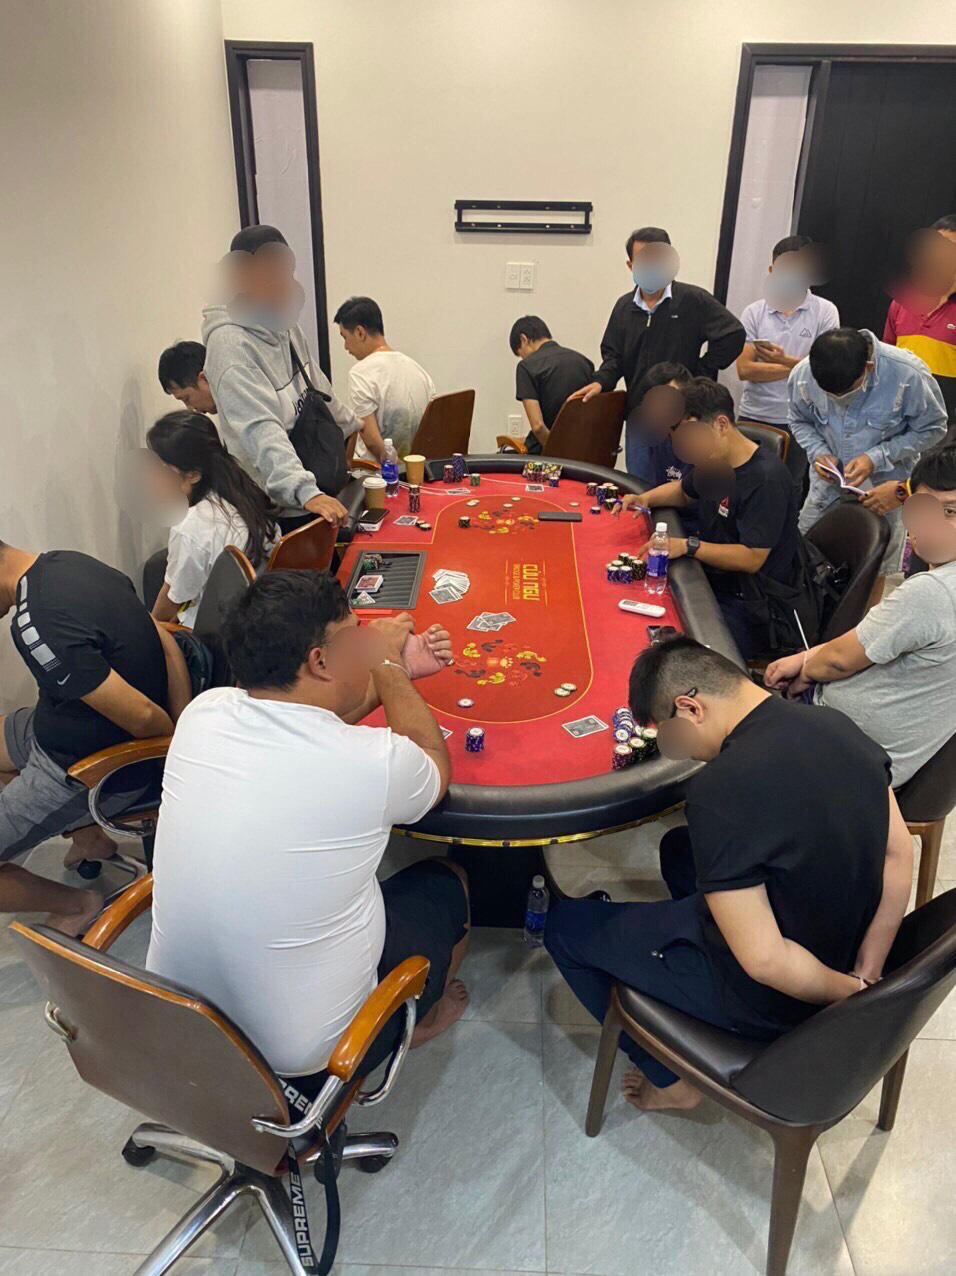 Đột kích sòng Poker quy tụ nhiều người ngoại quốc ở Sài Gòn - Ảnh 1.